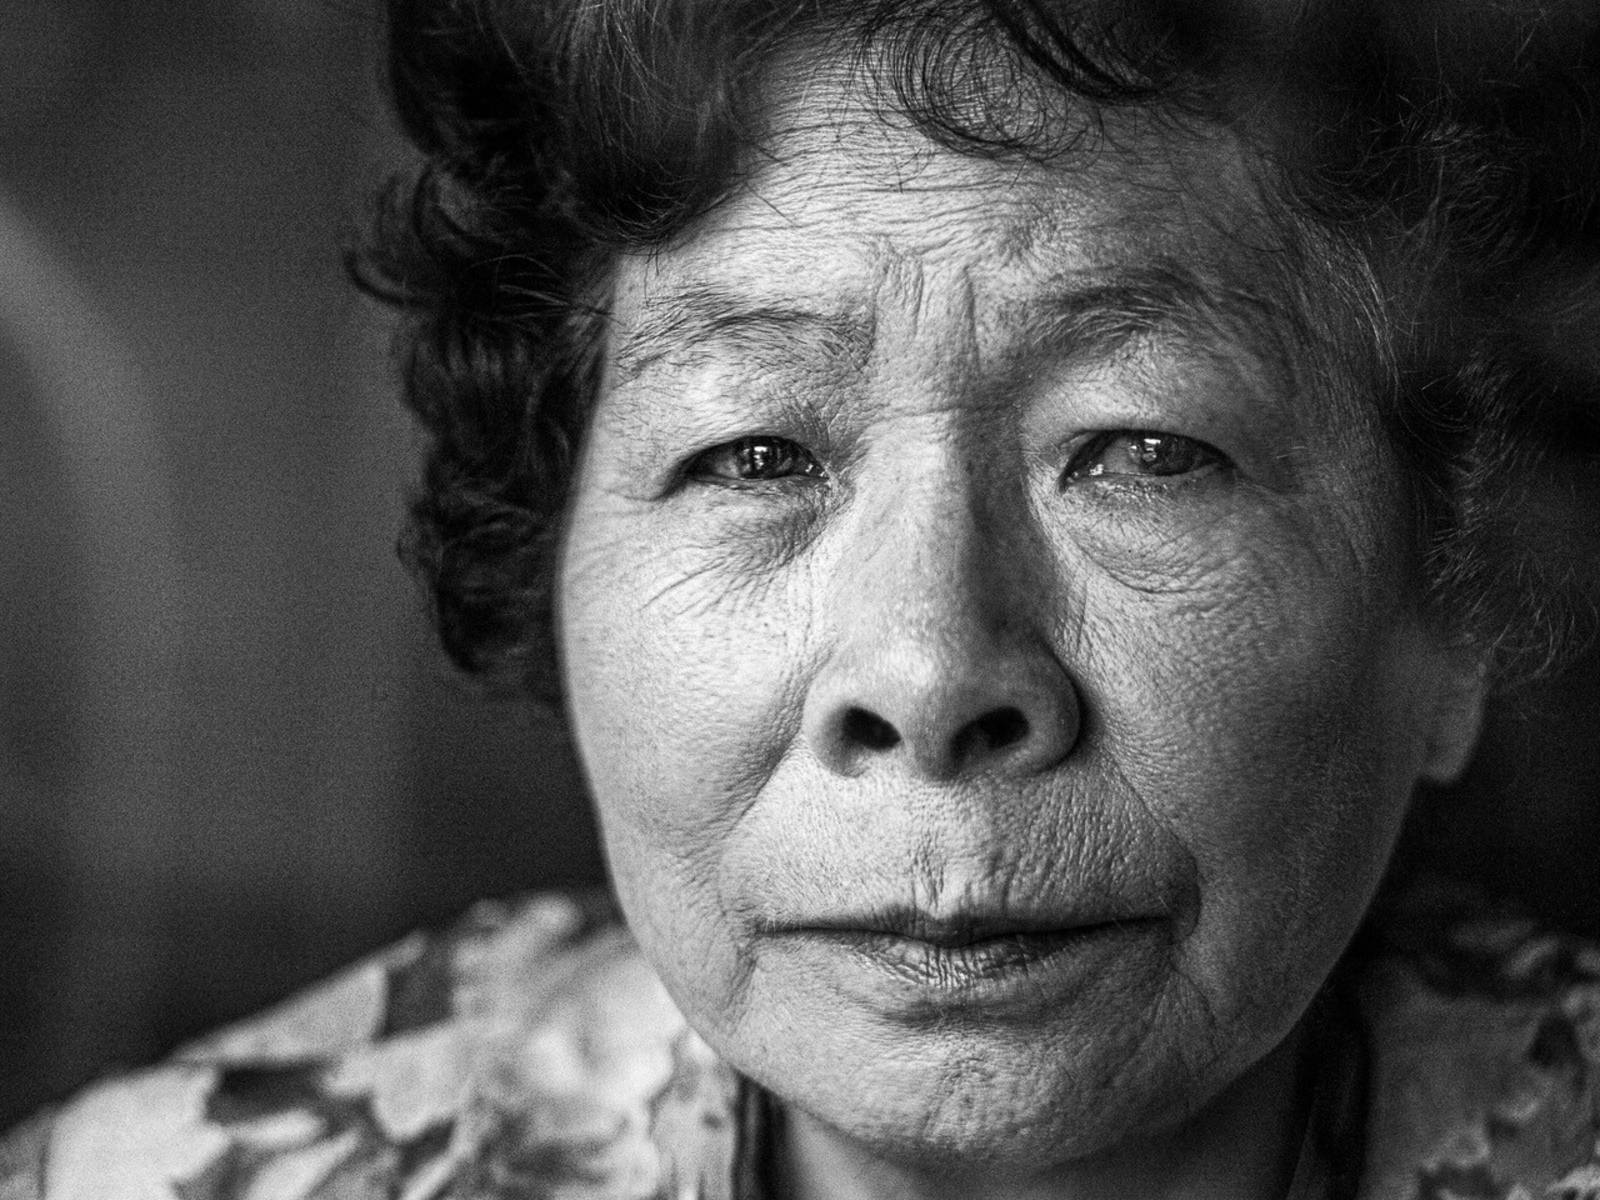 Eine ältere Dame, die den Atombombenabwurf auf Hiroshima überlebt hat. Schwarz/weiß-Bild, Nahaufnahme.